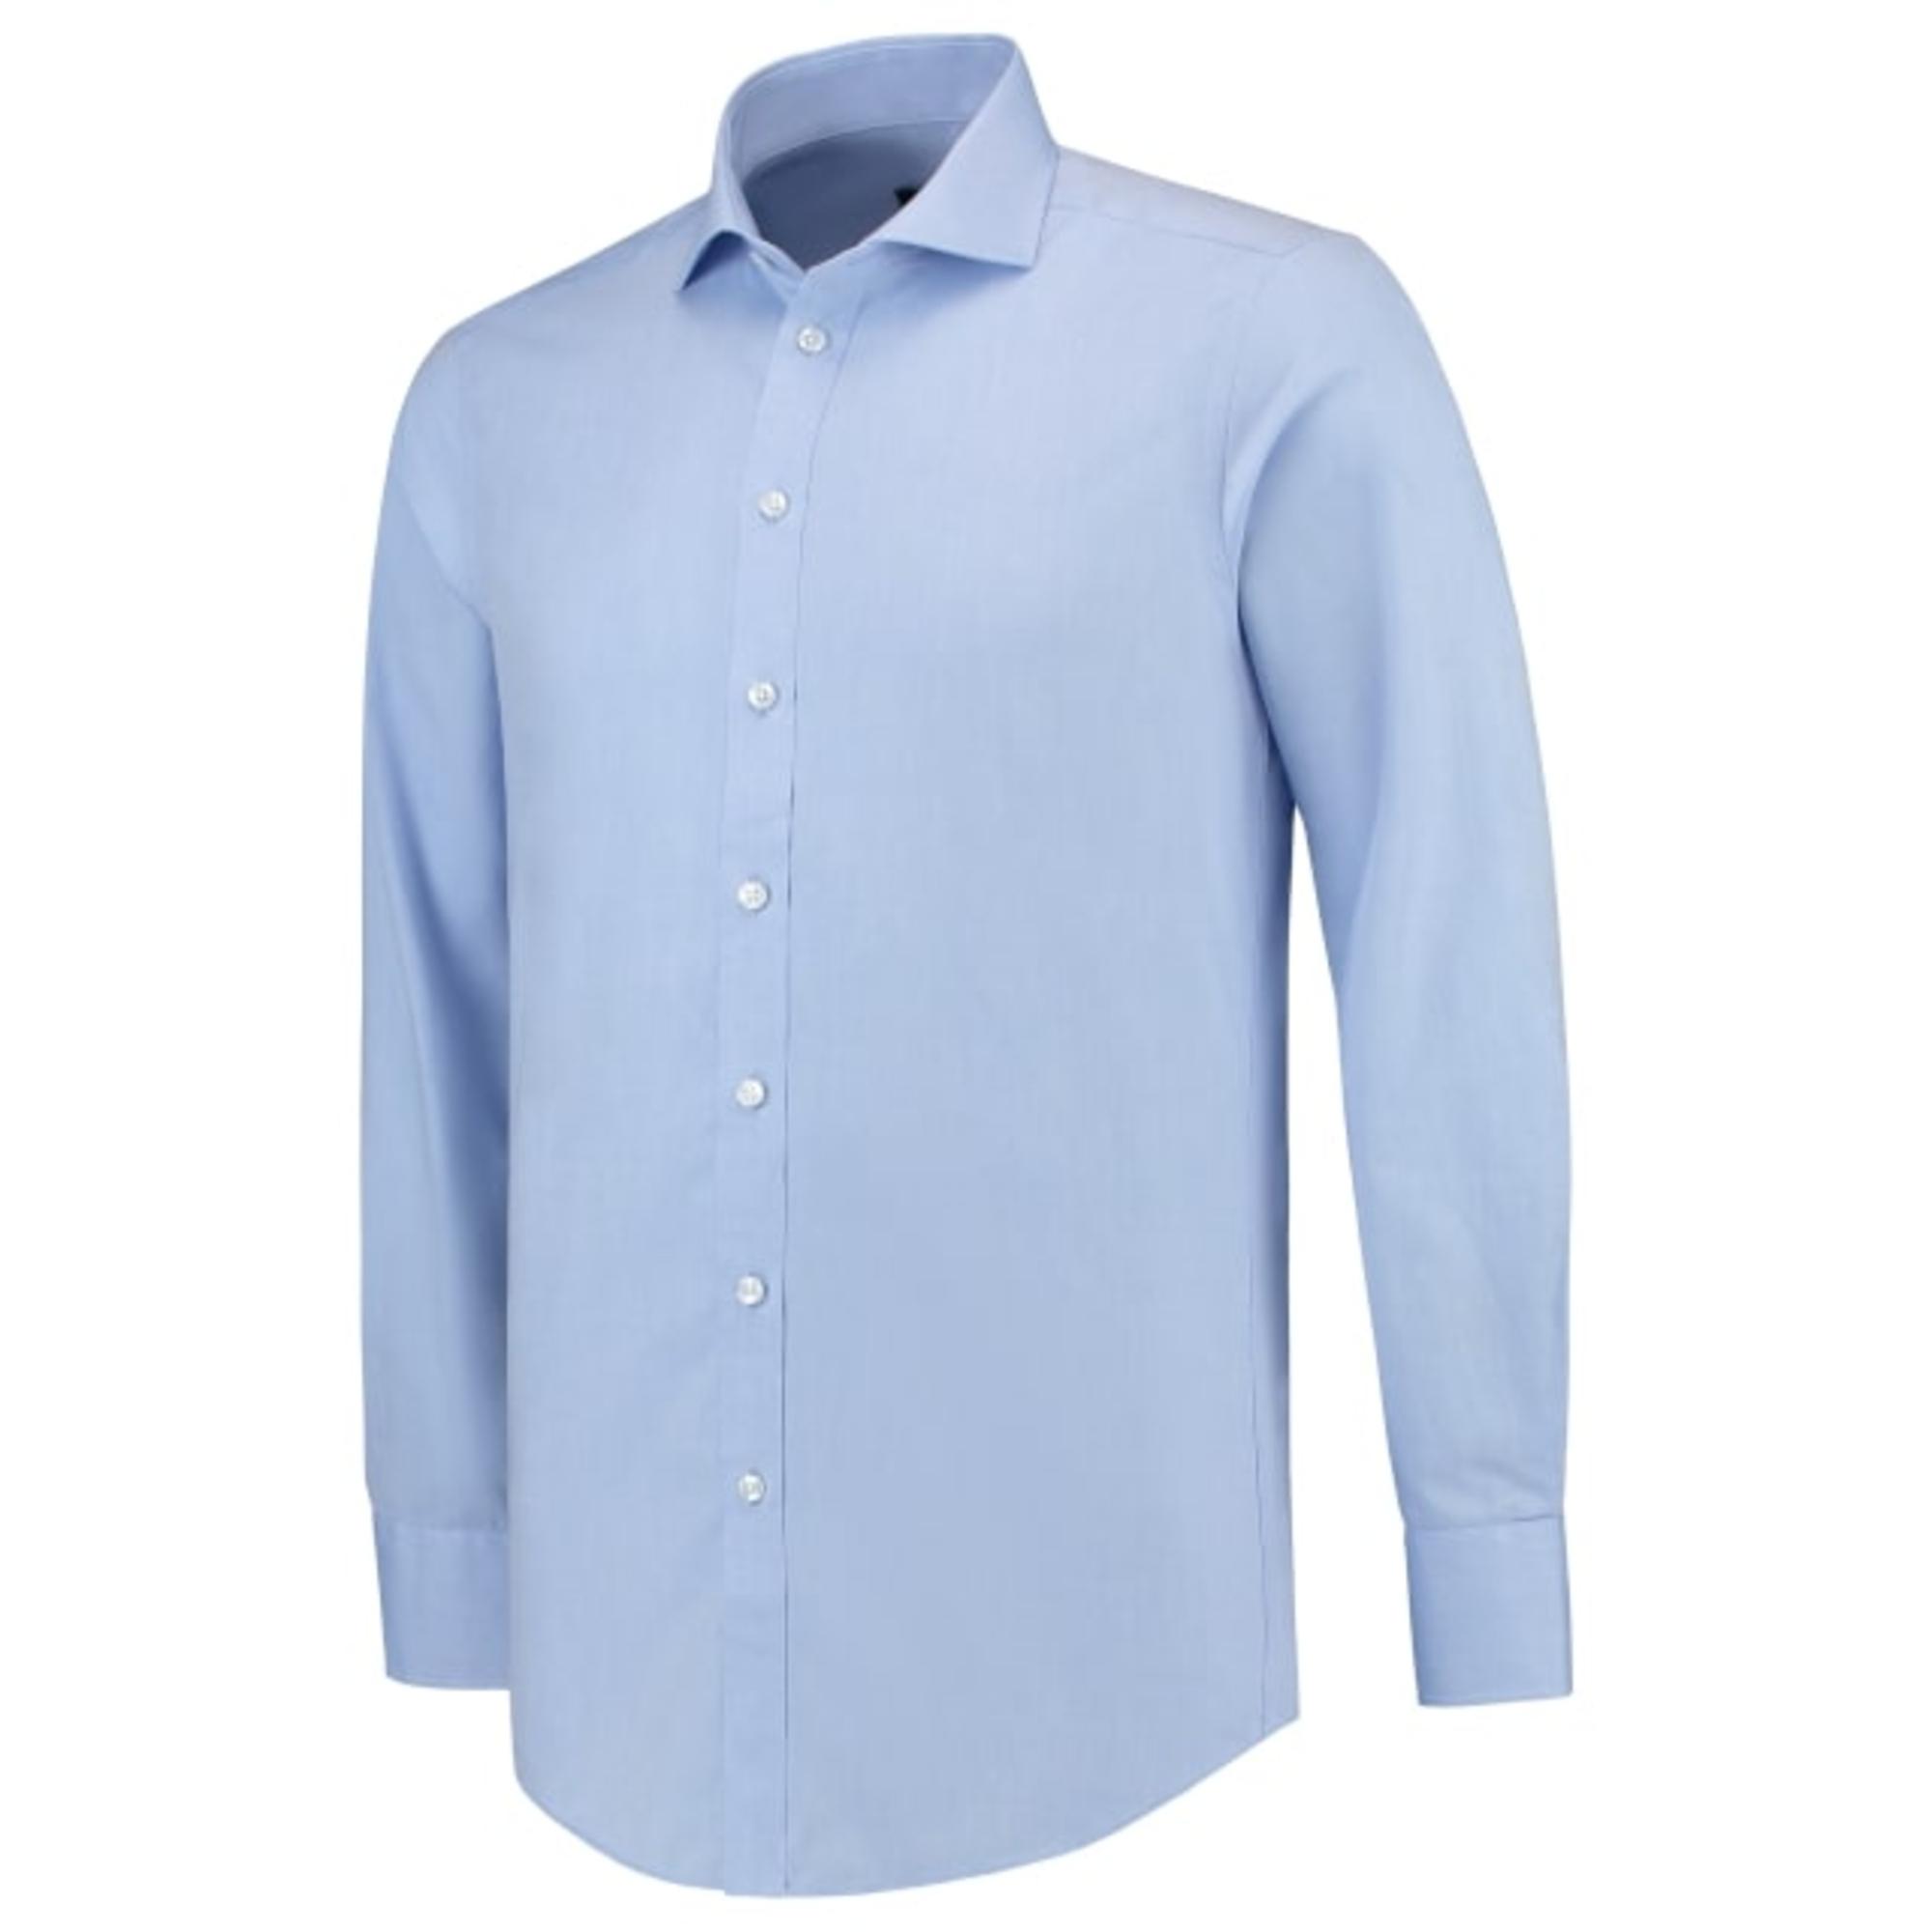 Cămaşă pentru bărbaţi Fitted Shirt T21 blue 45